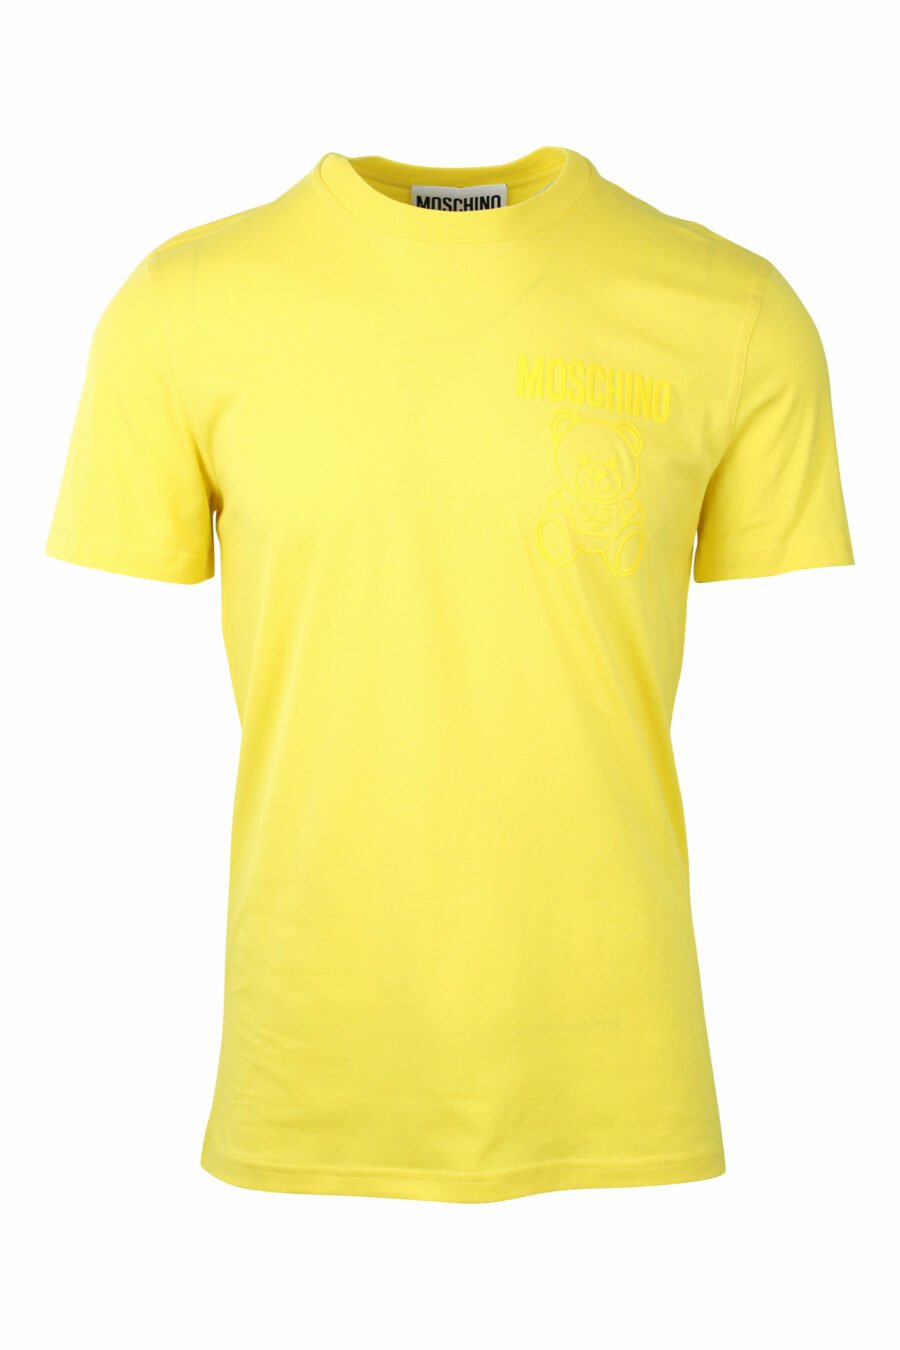 Gelbes T-Shirt mit monochromem Bären-Minilogo - IMG 1412